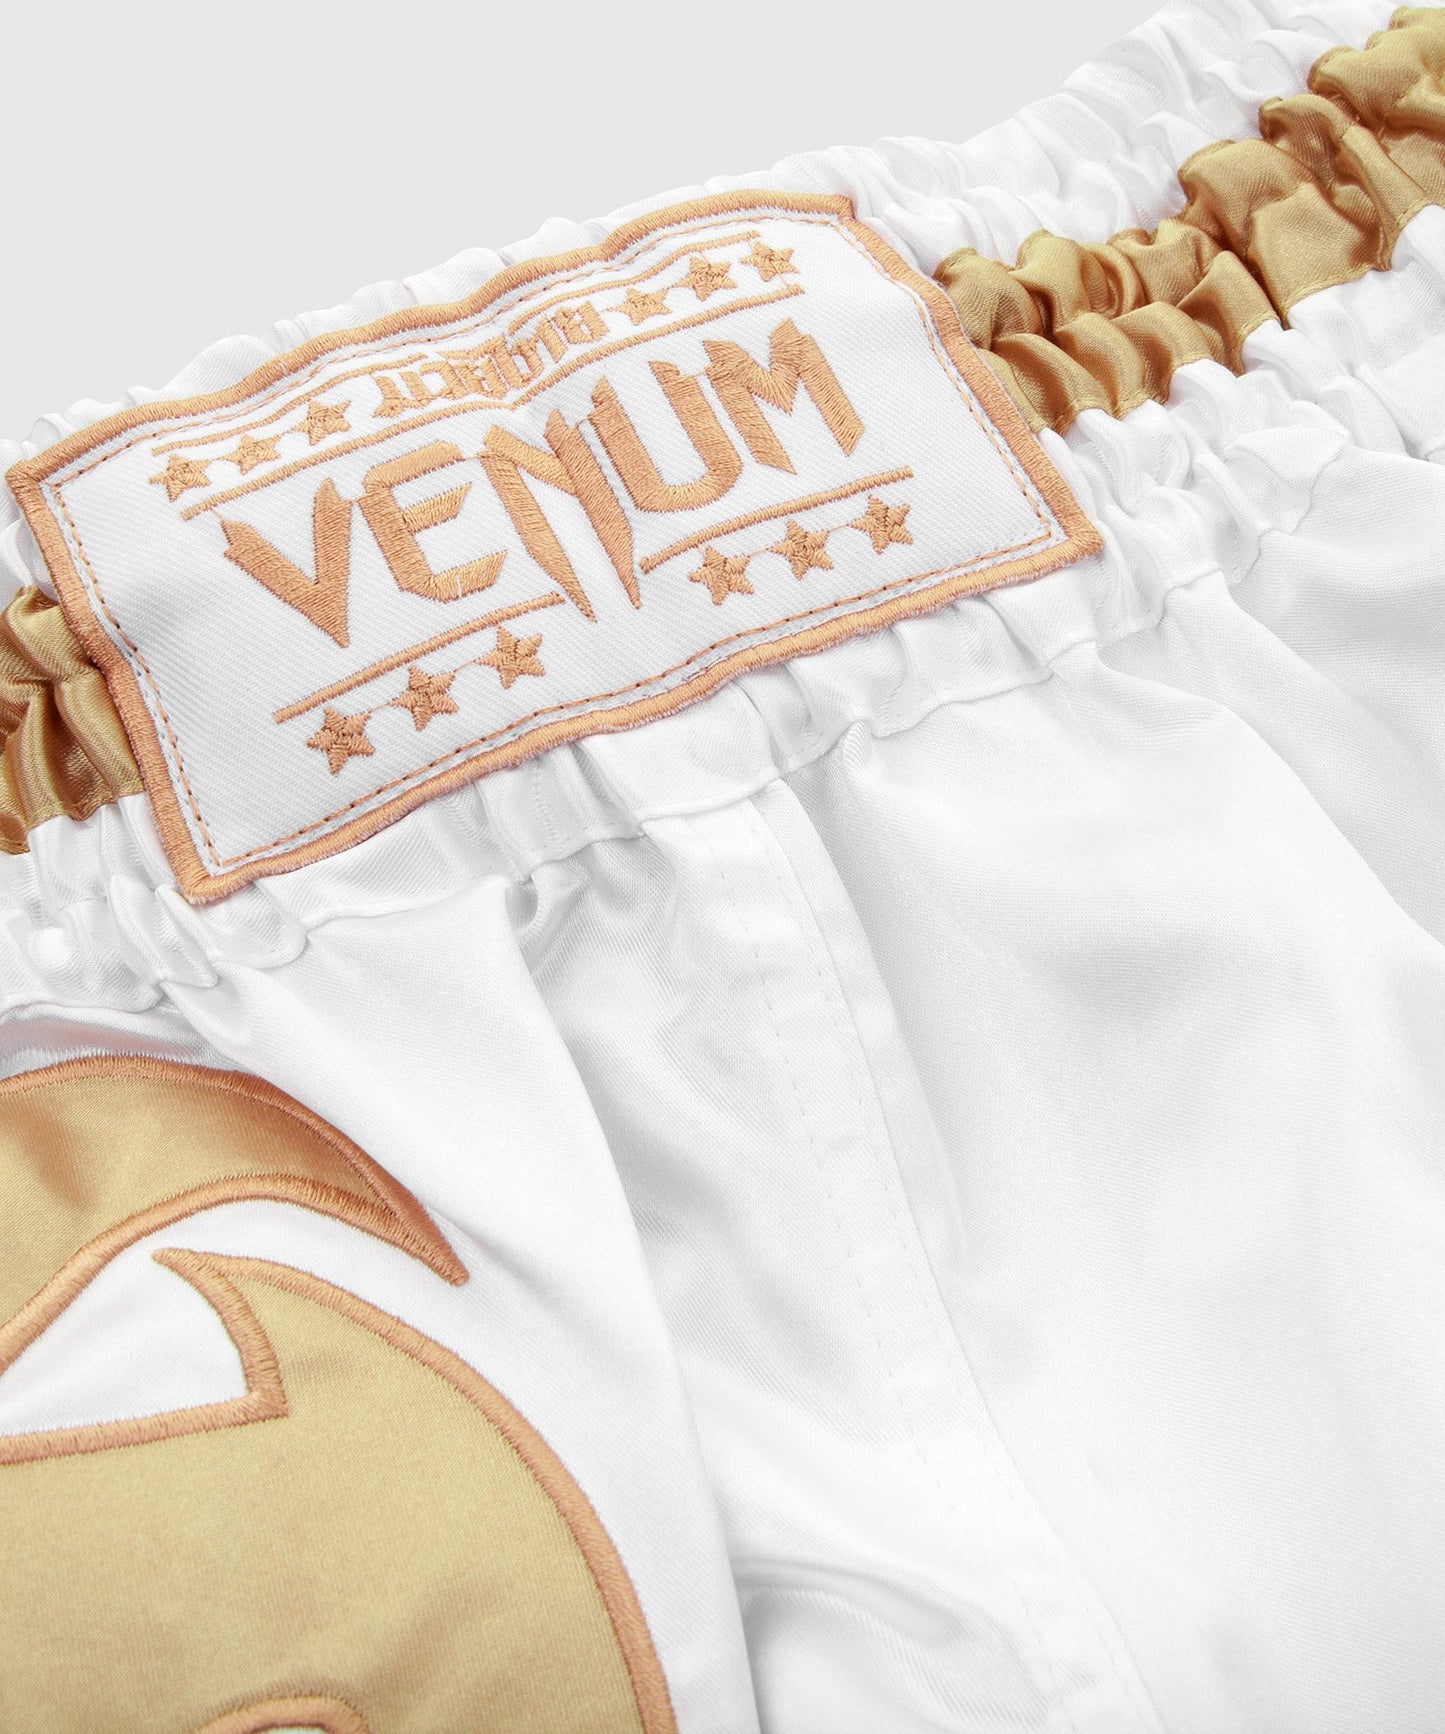 Venum Giant Muay Thai Shorts - White/Gold